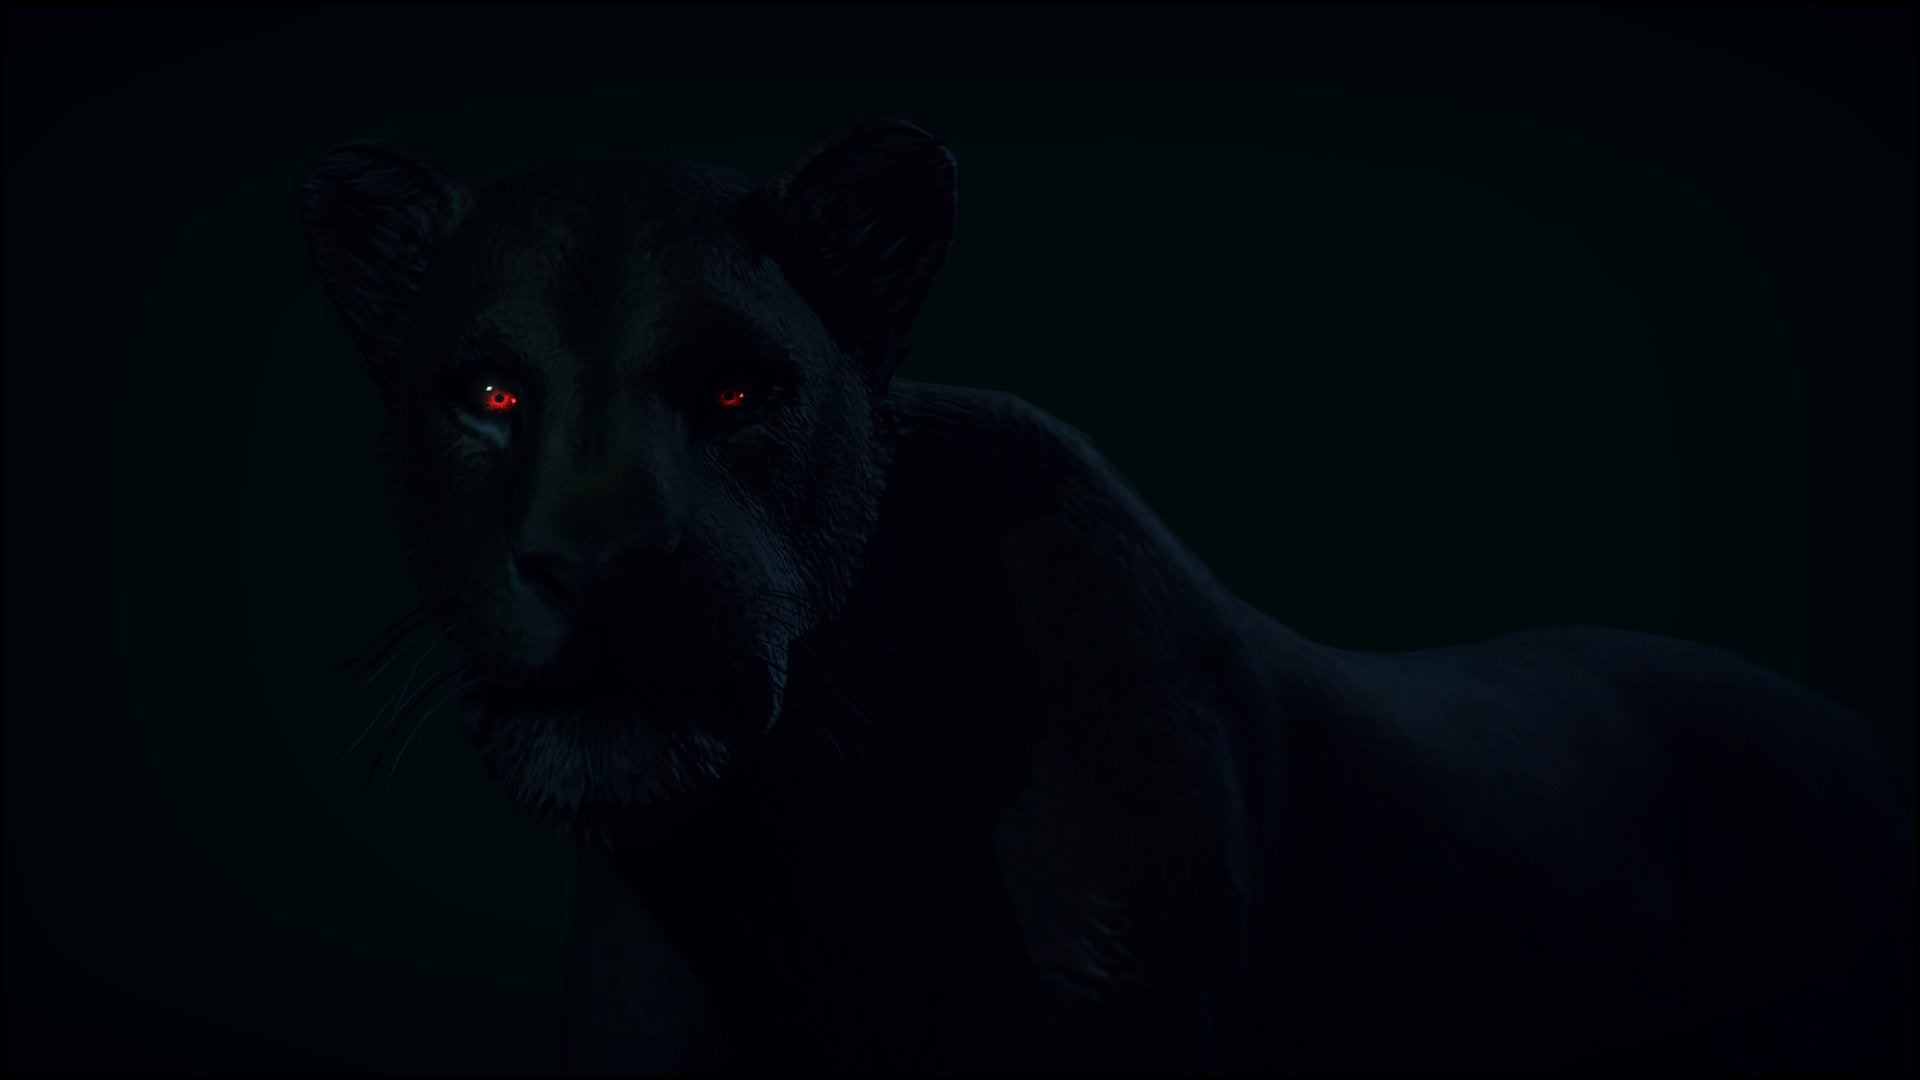 фанфик глаза пантеры светятся в ночи фото 61